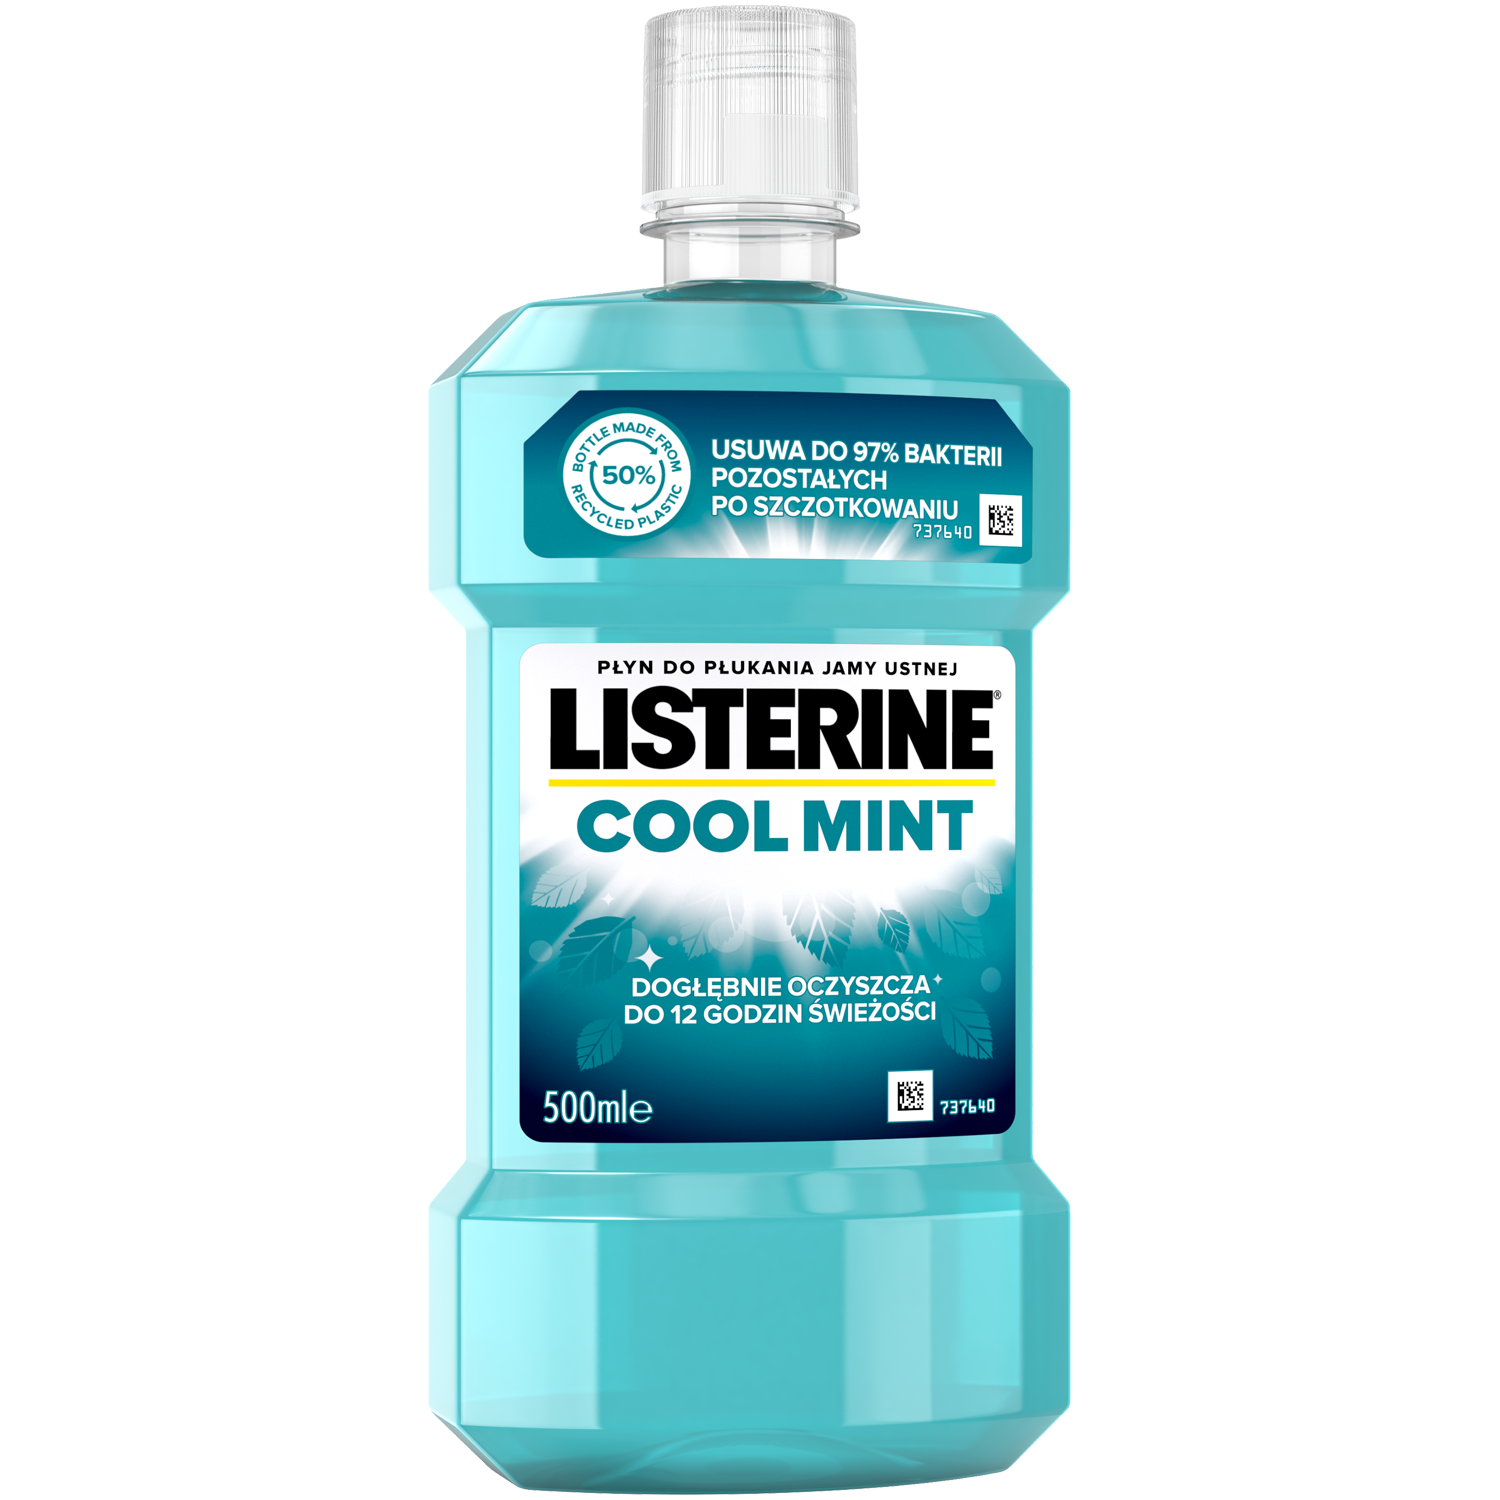 Listerine жидкость для полоскания рта, 500 мл